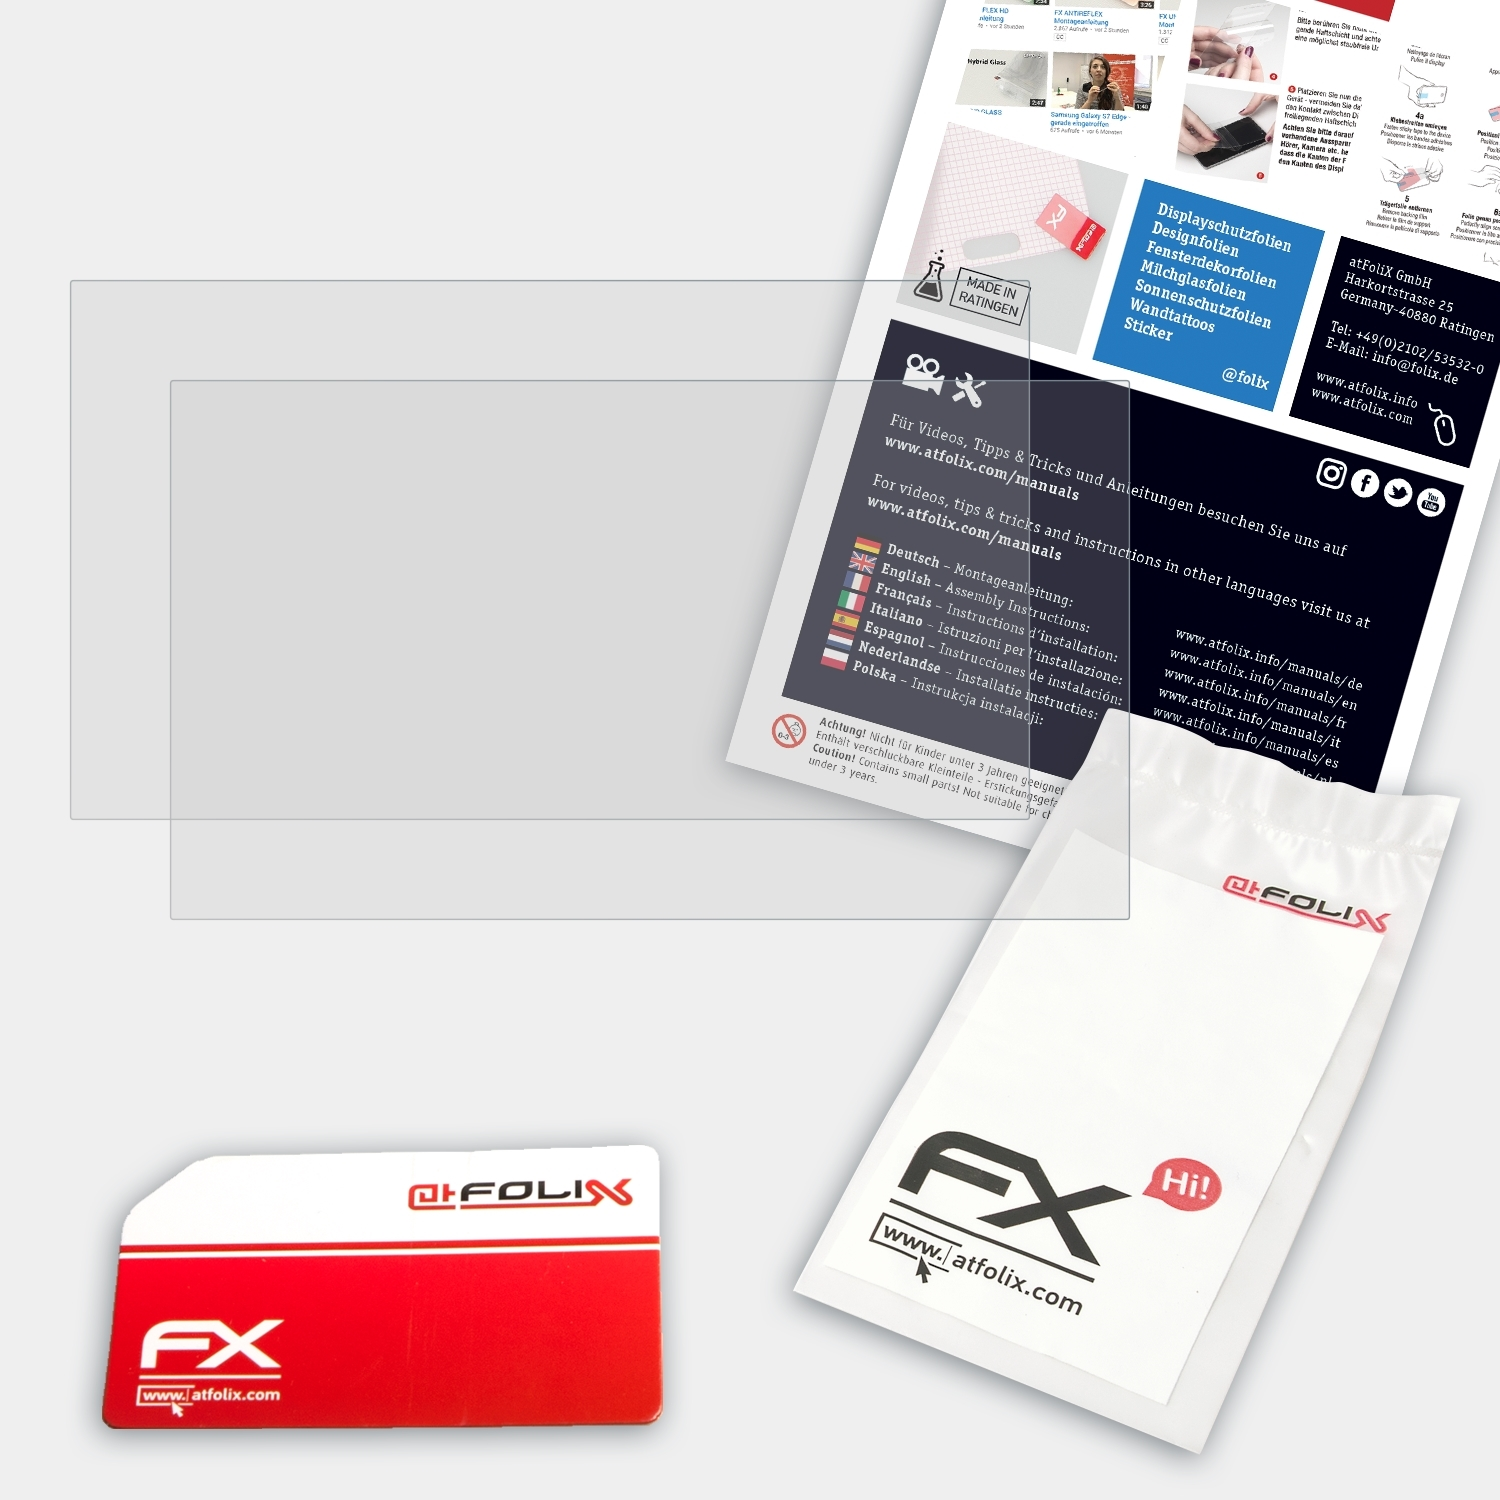 ATFOLIX 2x (15 FX-Antireflex L340 Inch)) Lenovo IdeaPad Displayschutz(für